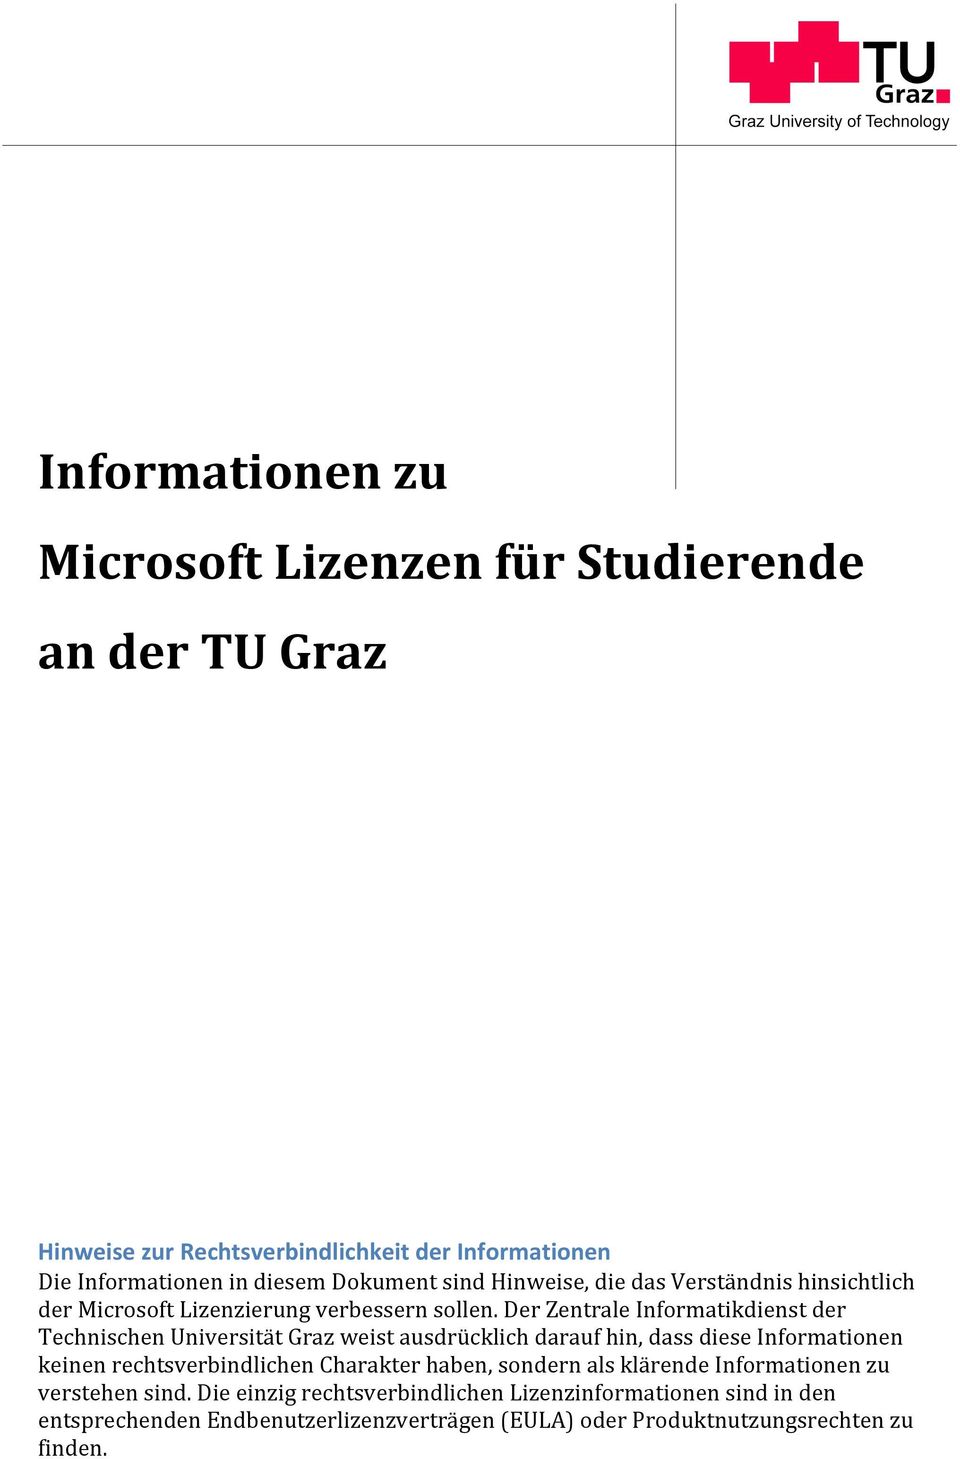 Der Zentrale Informatikdienst der Technischen Universität Graz weist ausdrücklich darauf hin, dass diese Informationen keinen rechtsverbindlichen